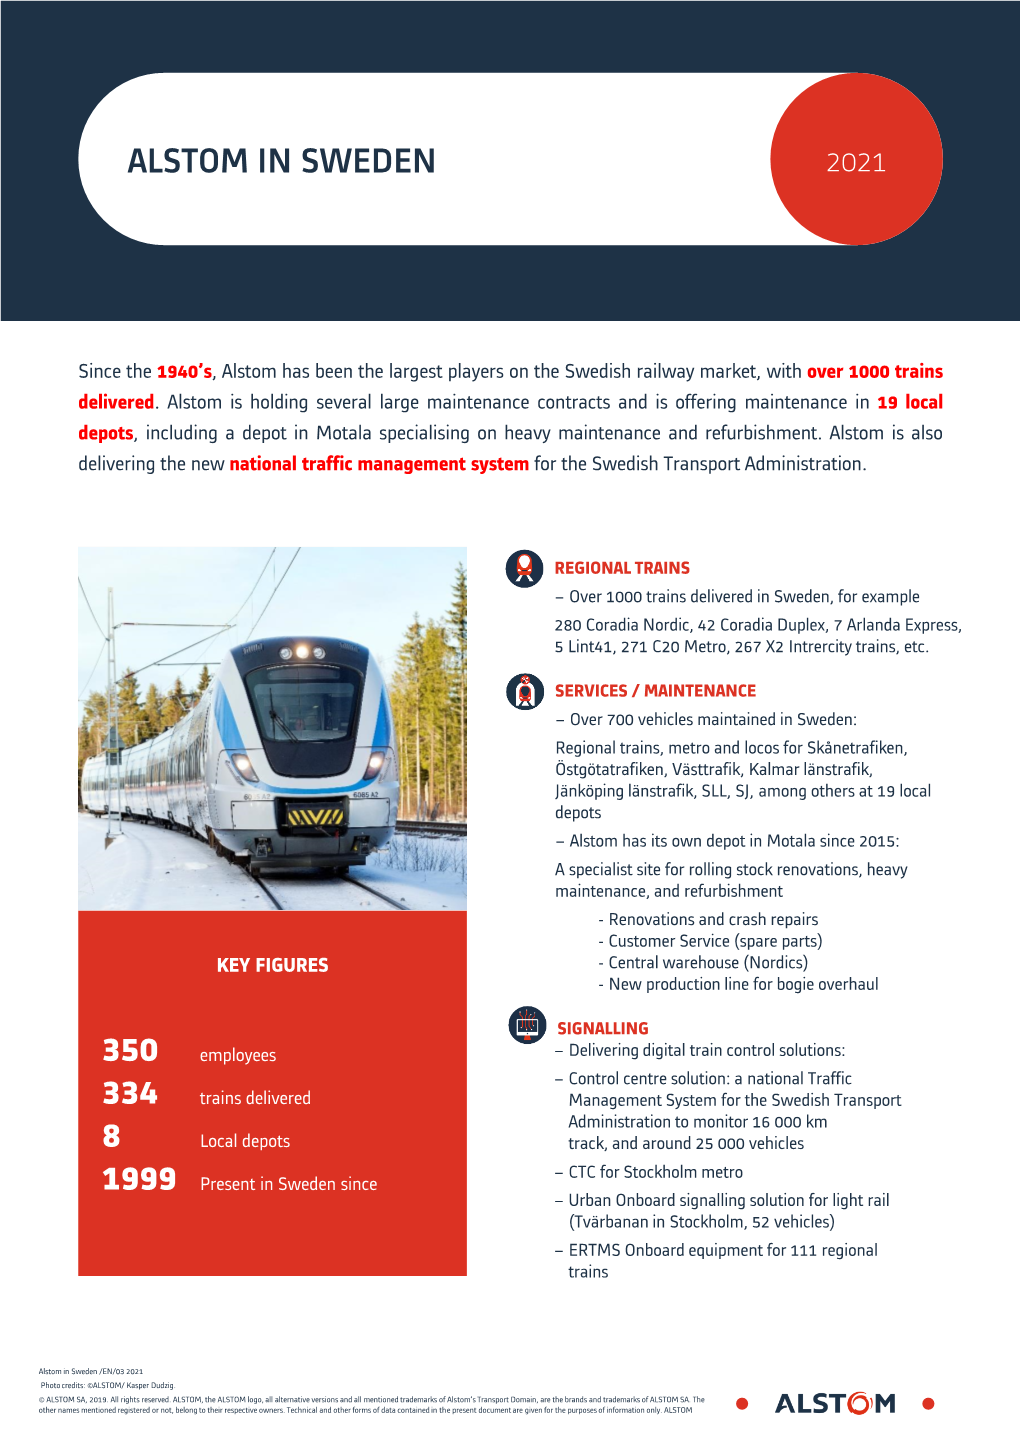 Alstom in Sweden 2021